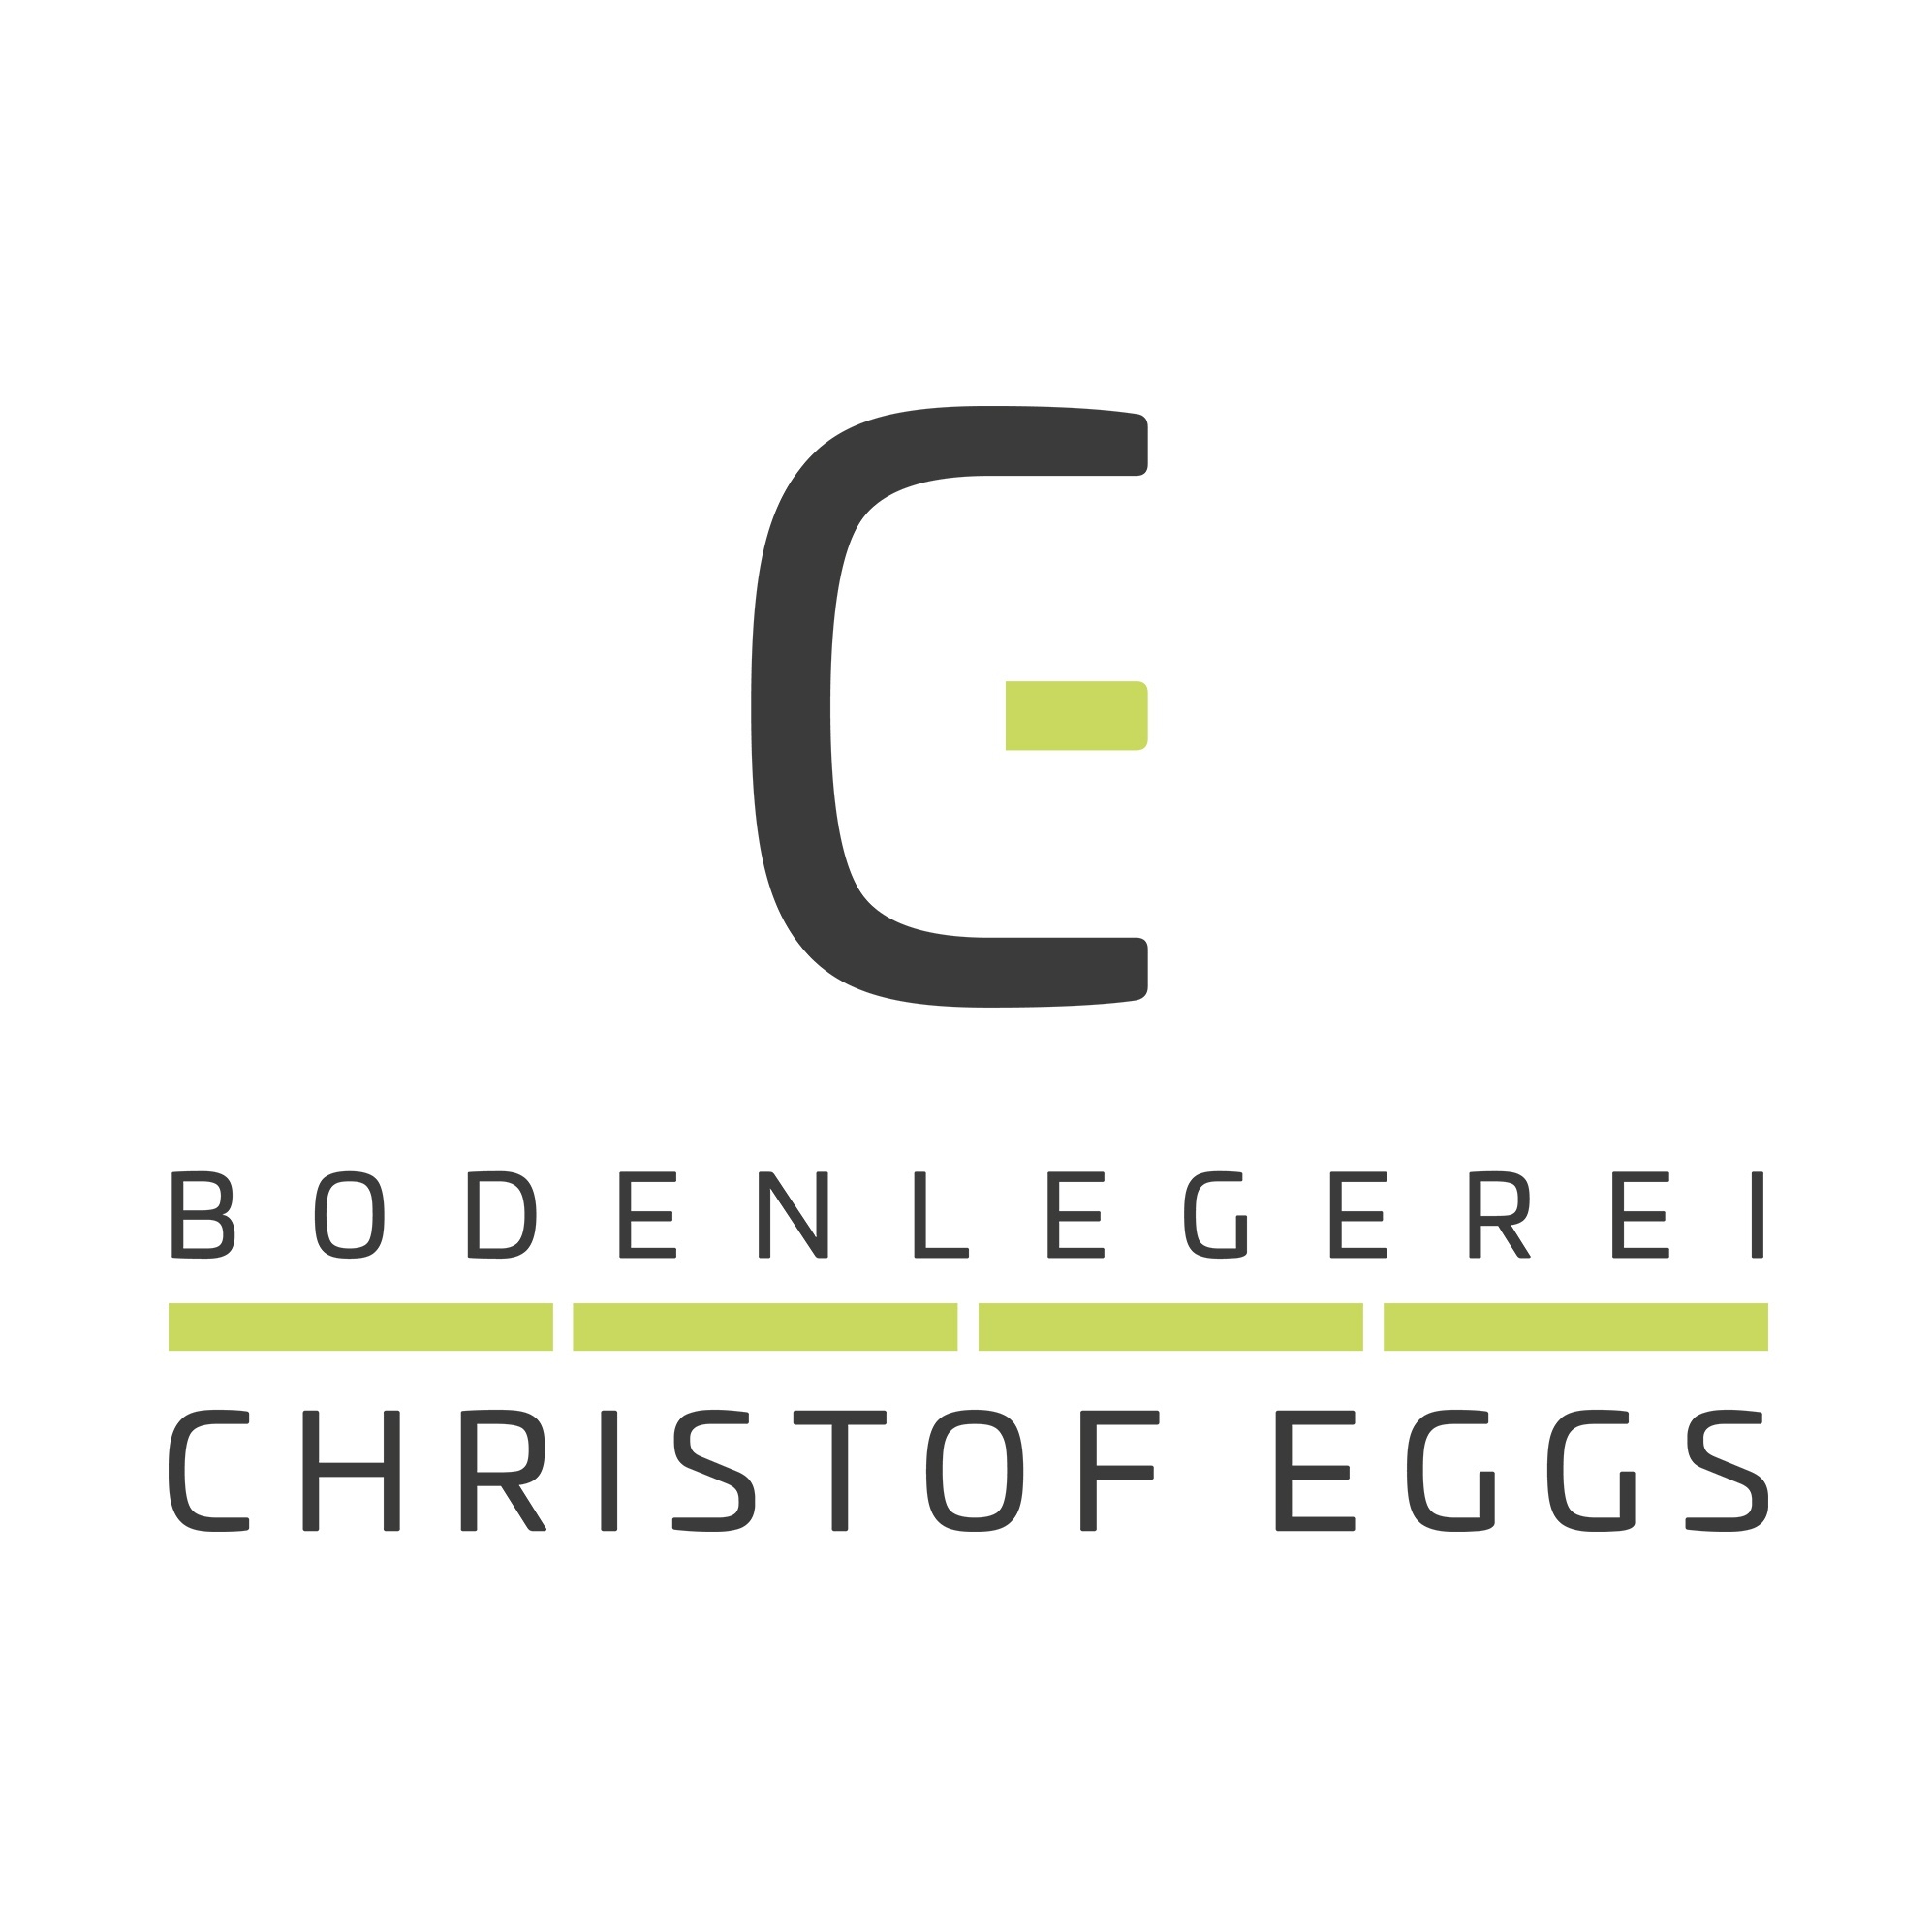 Bodenlegerei Christof Eggs